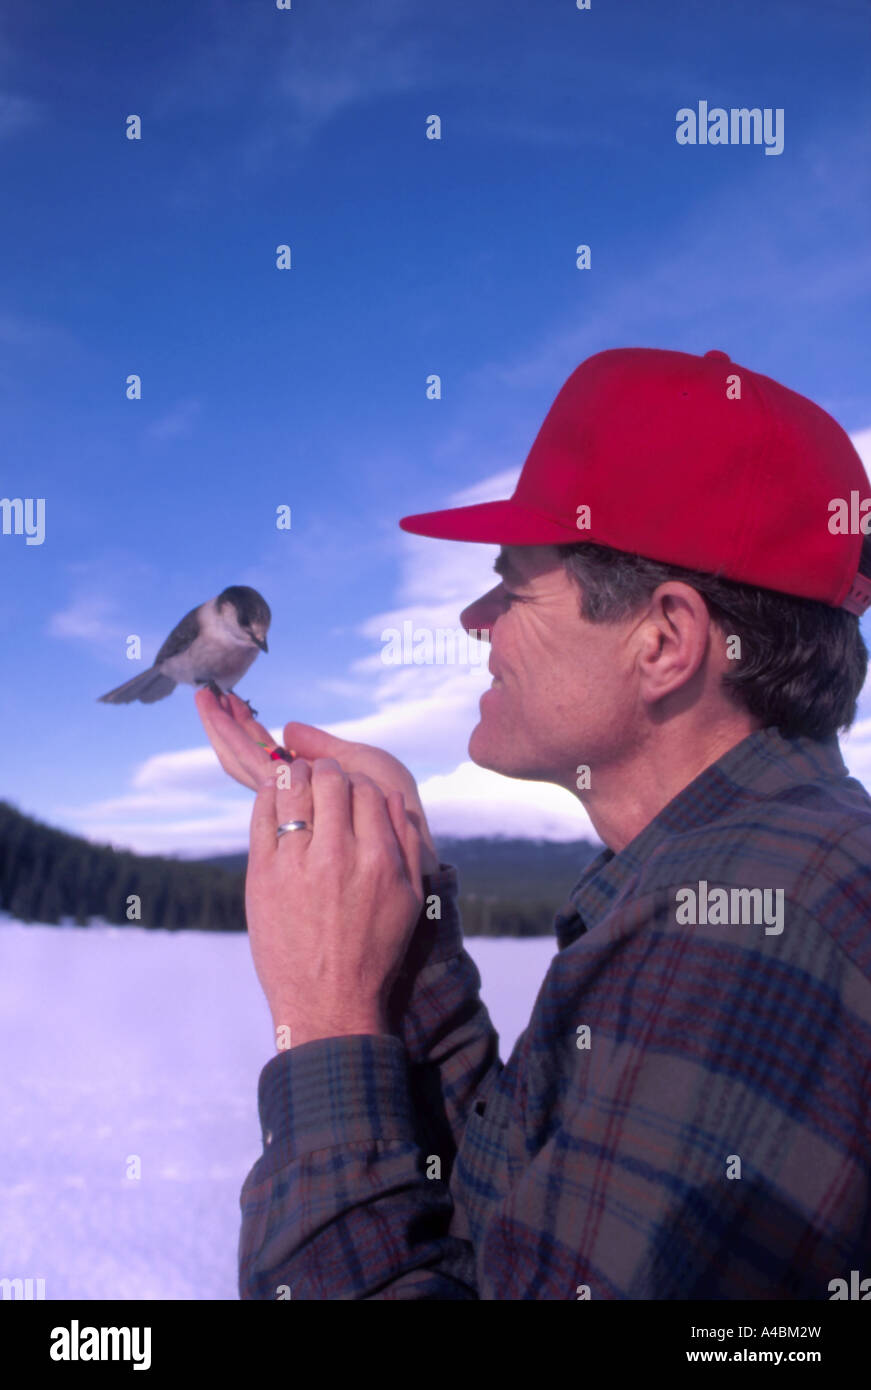 35 449,07200 bénéficiant d'alimentation de l'homme regardant Canada jay en scène d'hiver avec la neige et le ciel bleu, red hat Banque D'Images